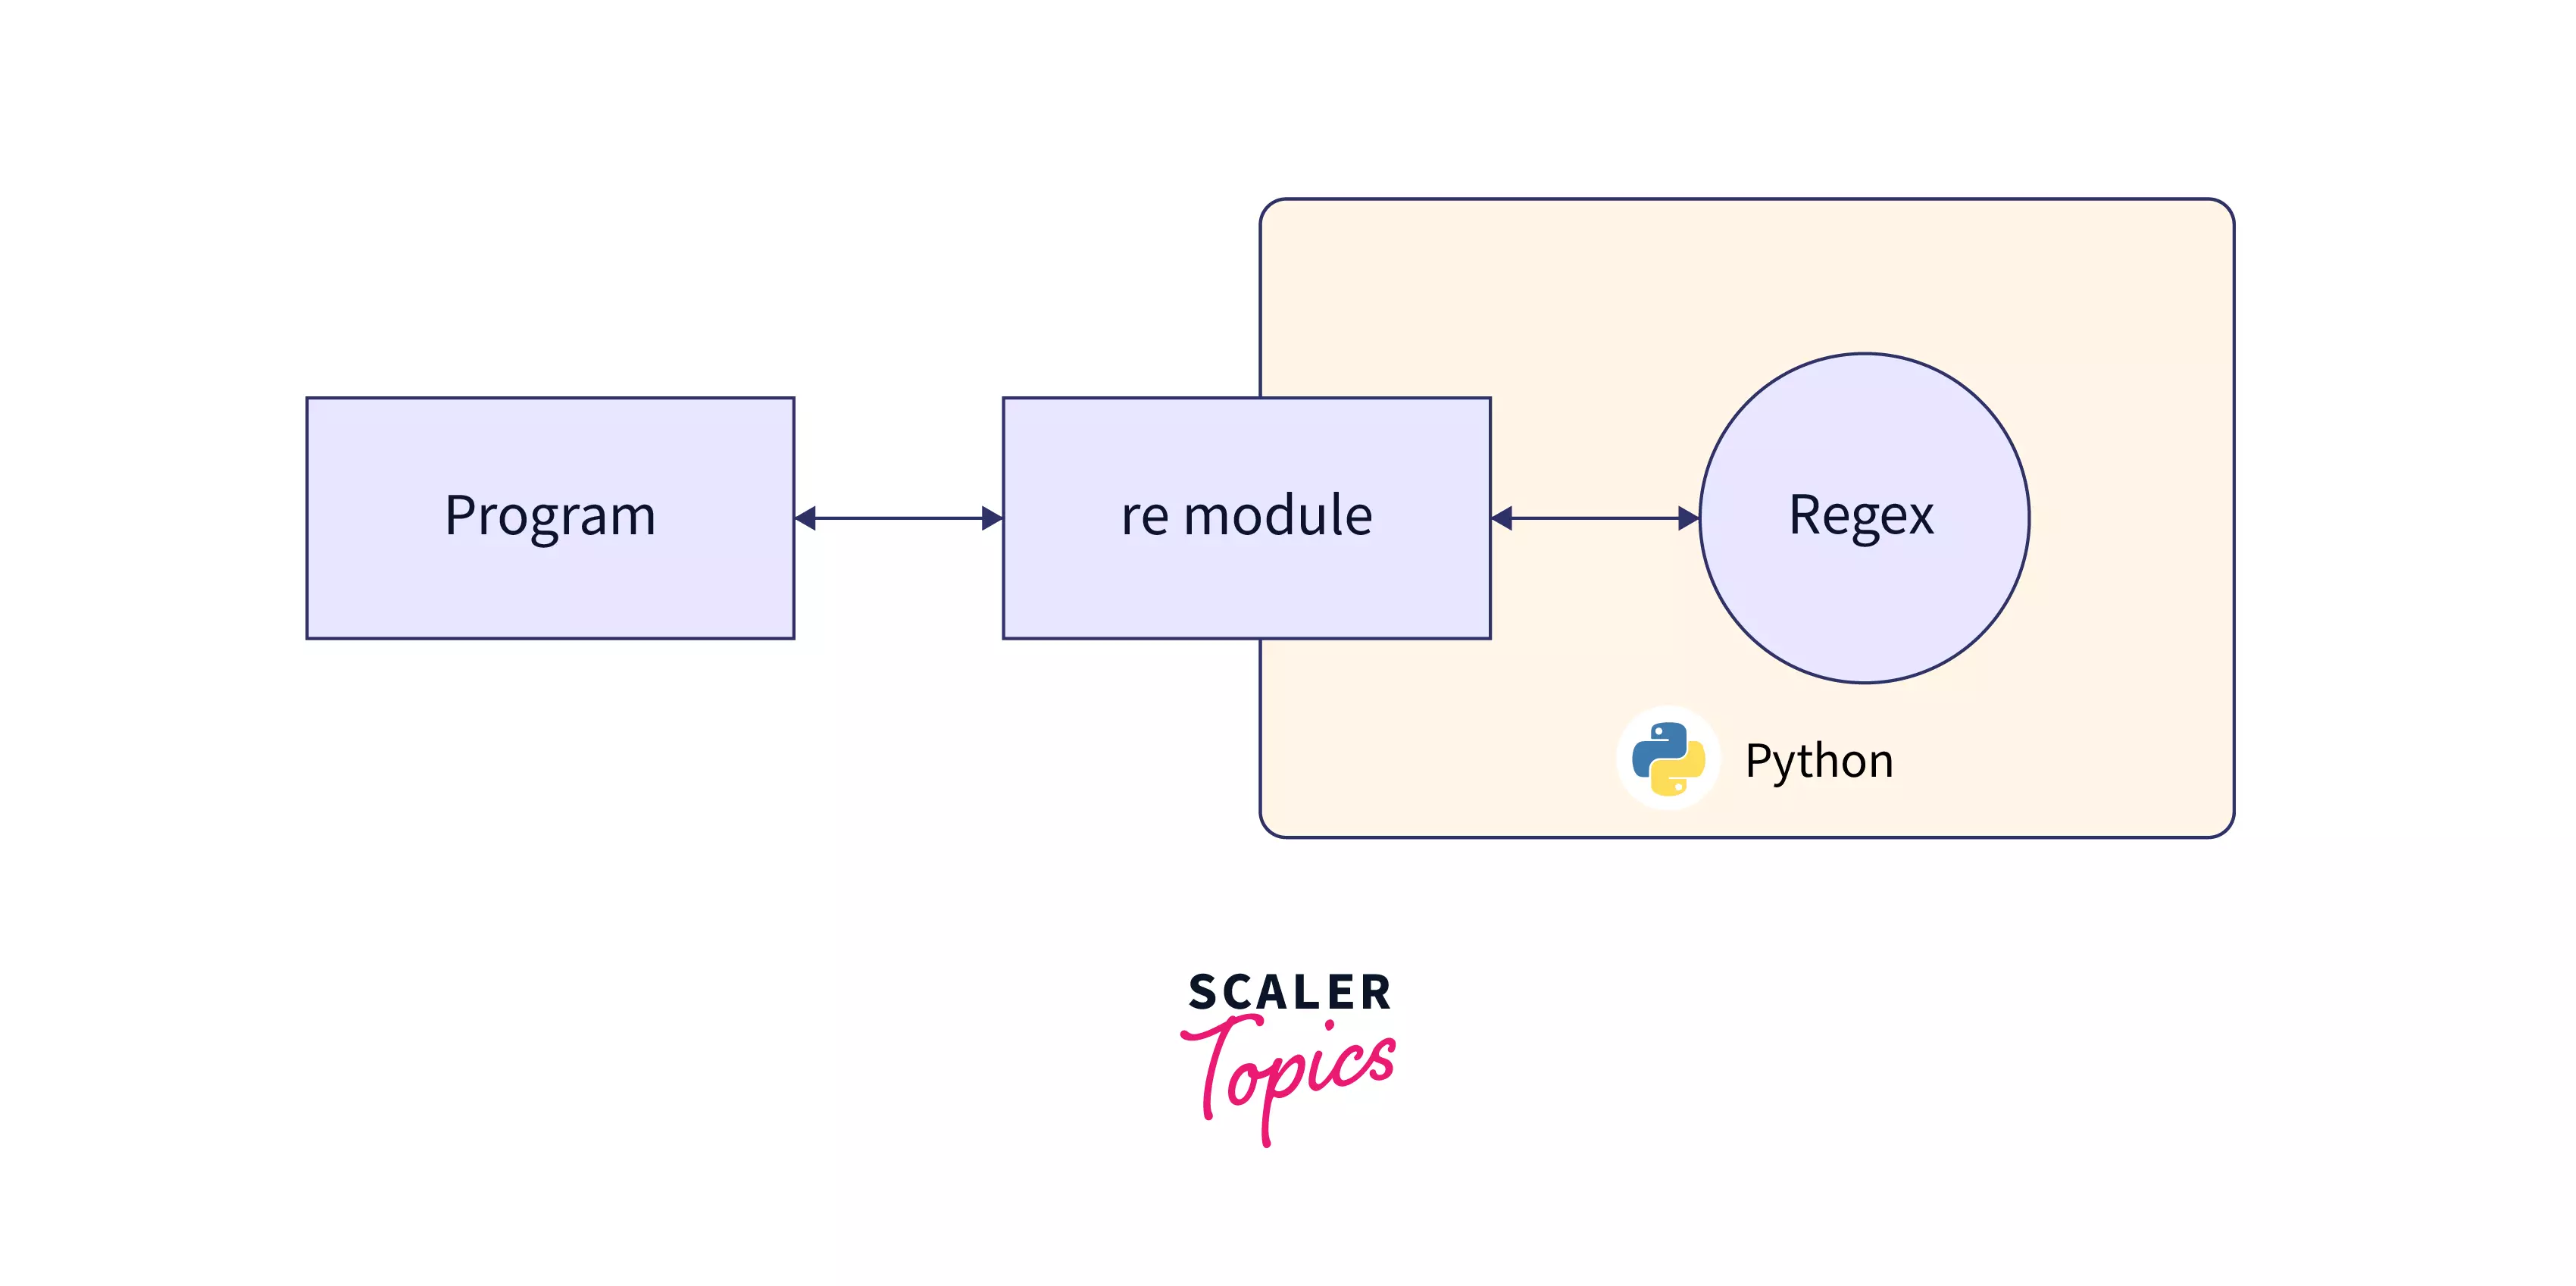 re module in Python